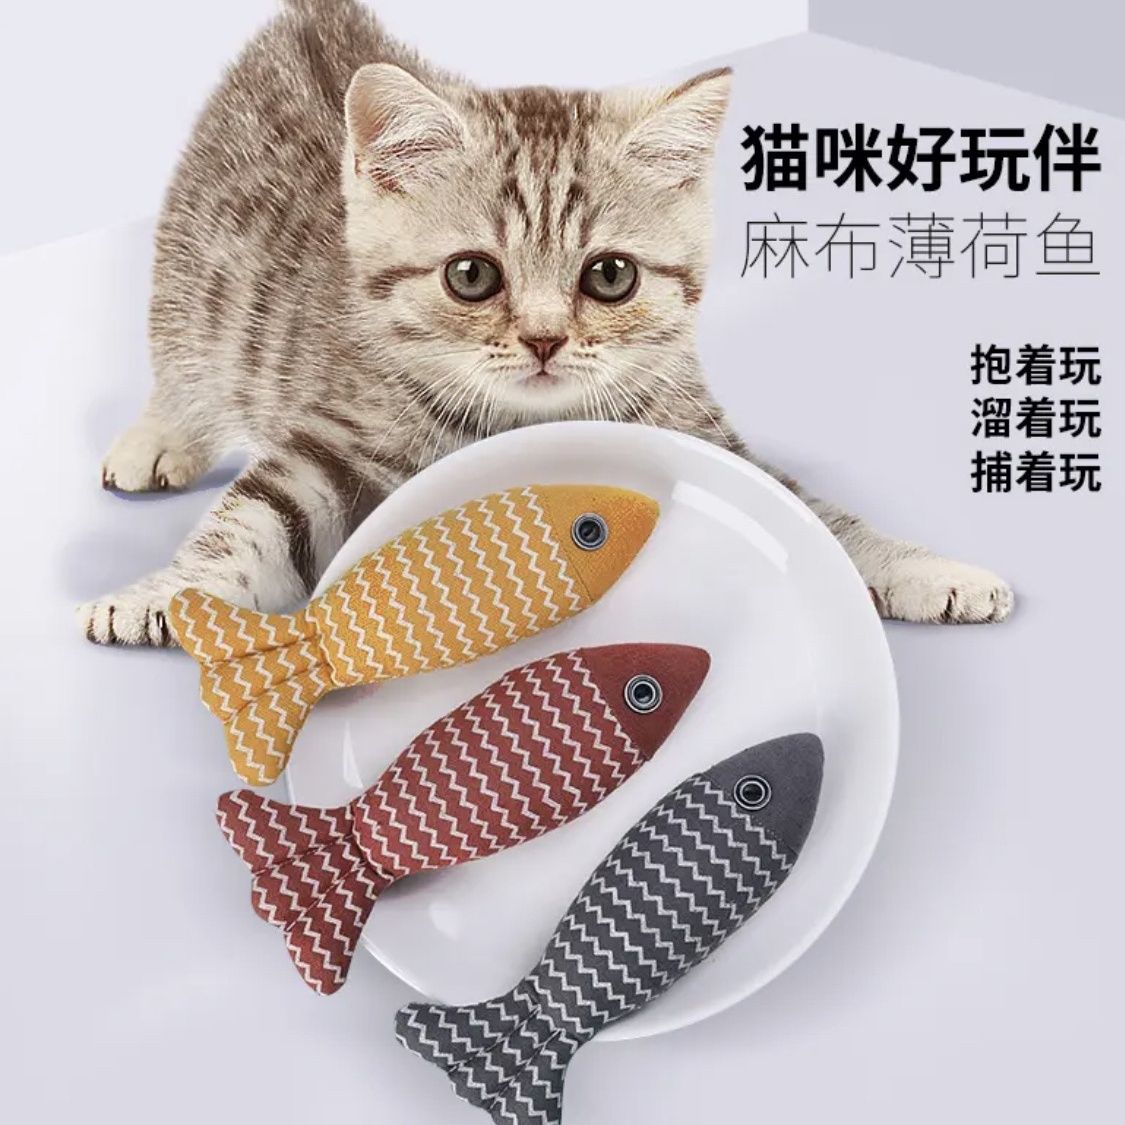 新款逗猫玩具自嗨解闷猫薄荷麻布鱼逗猫玩具抱枕玩偶宠物玩具